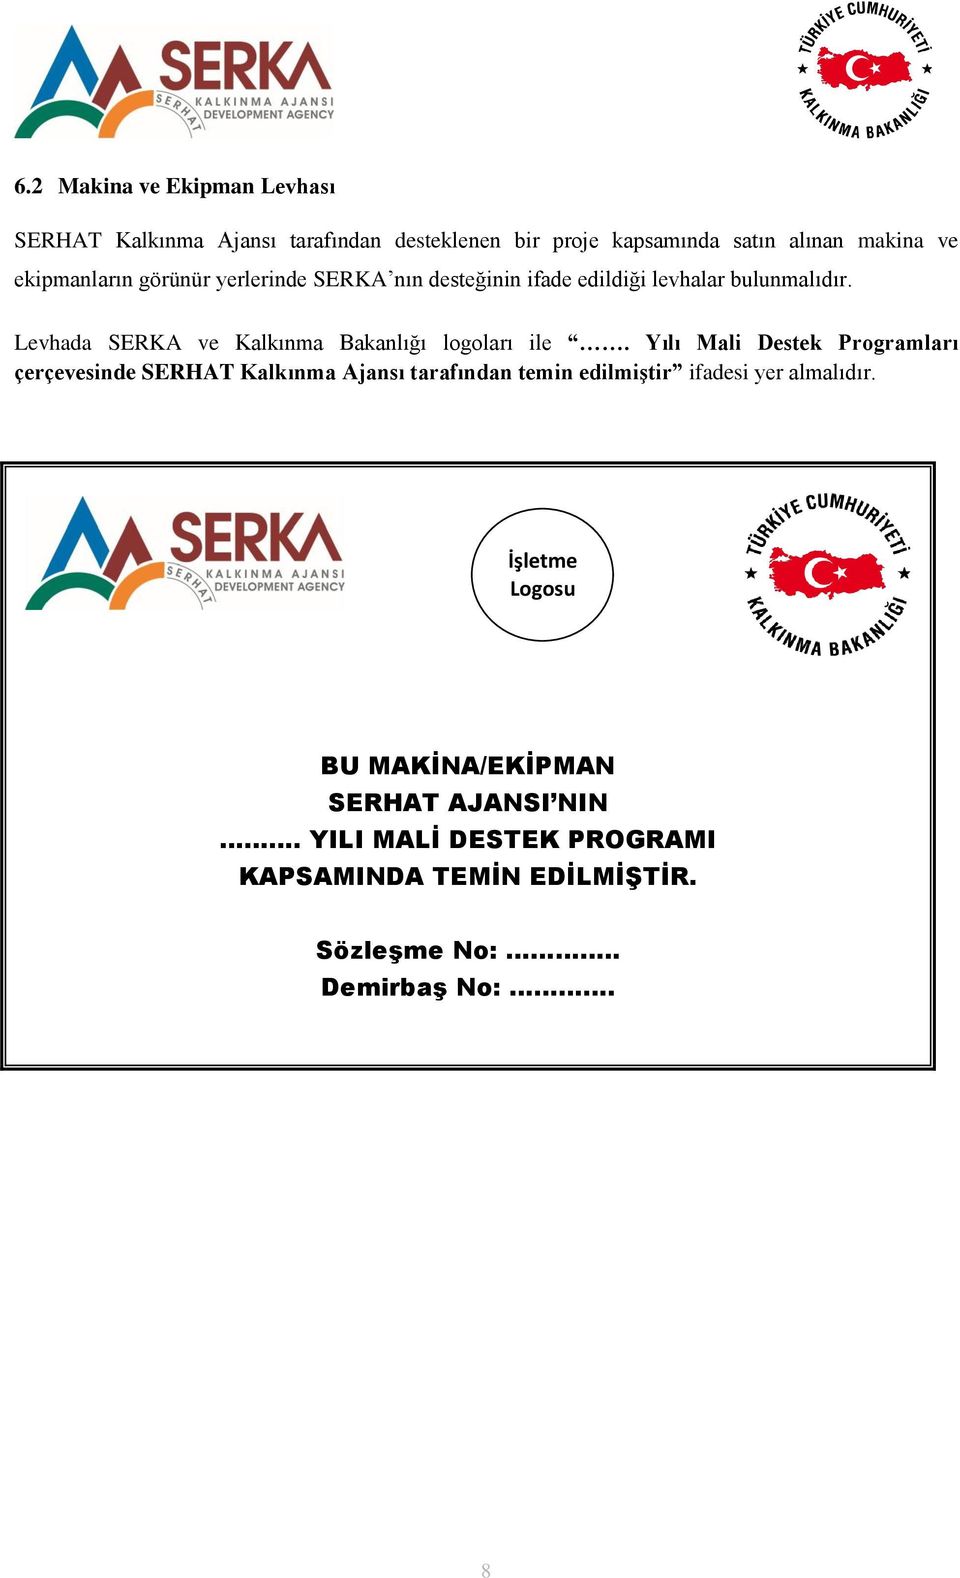 Levhada SERKA ve Kalkınma Bakanlığı logoları ile.